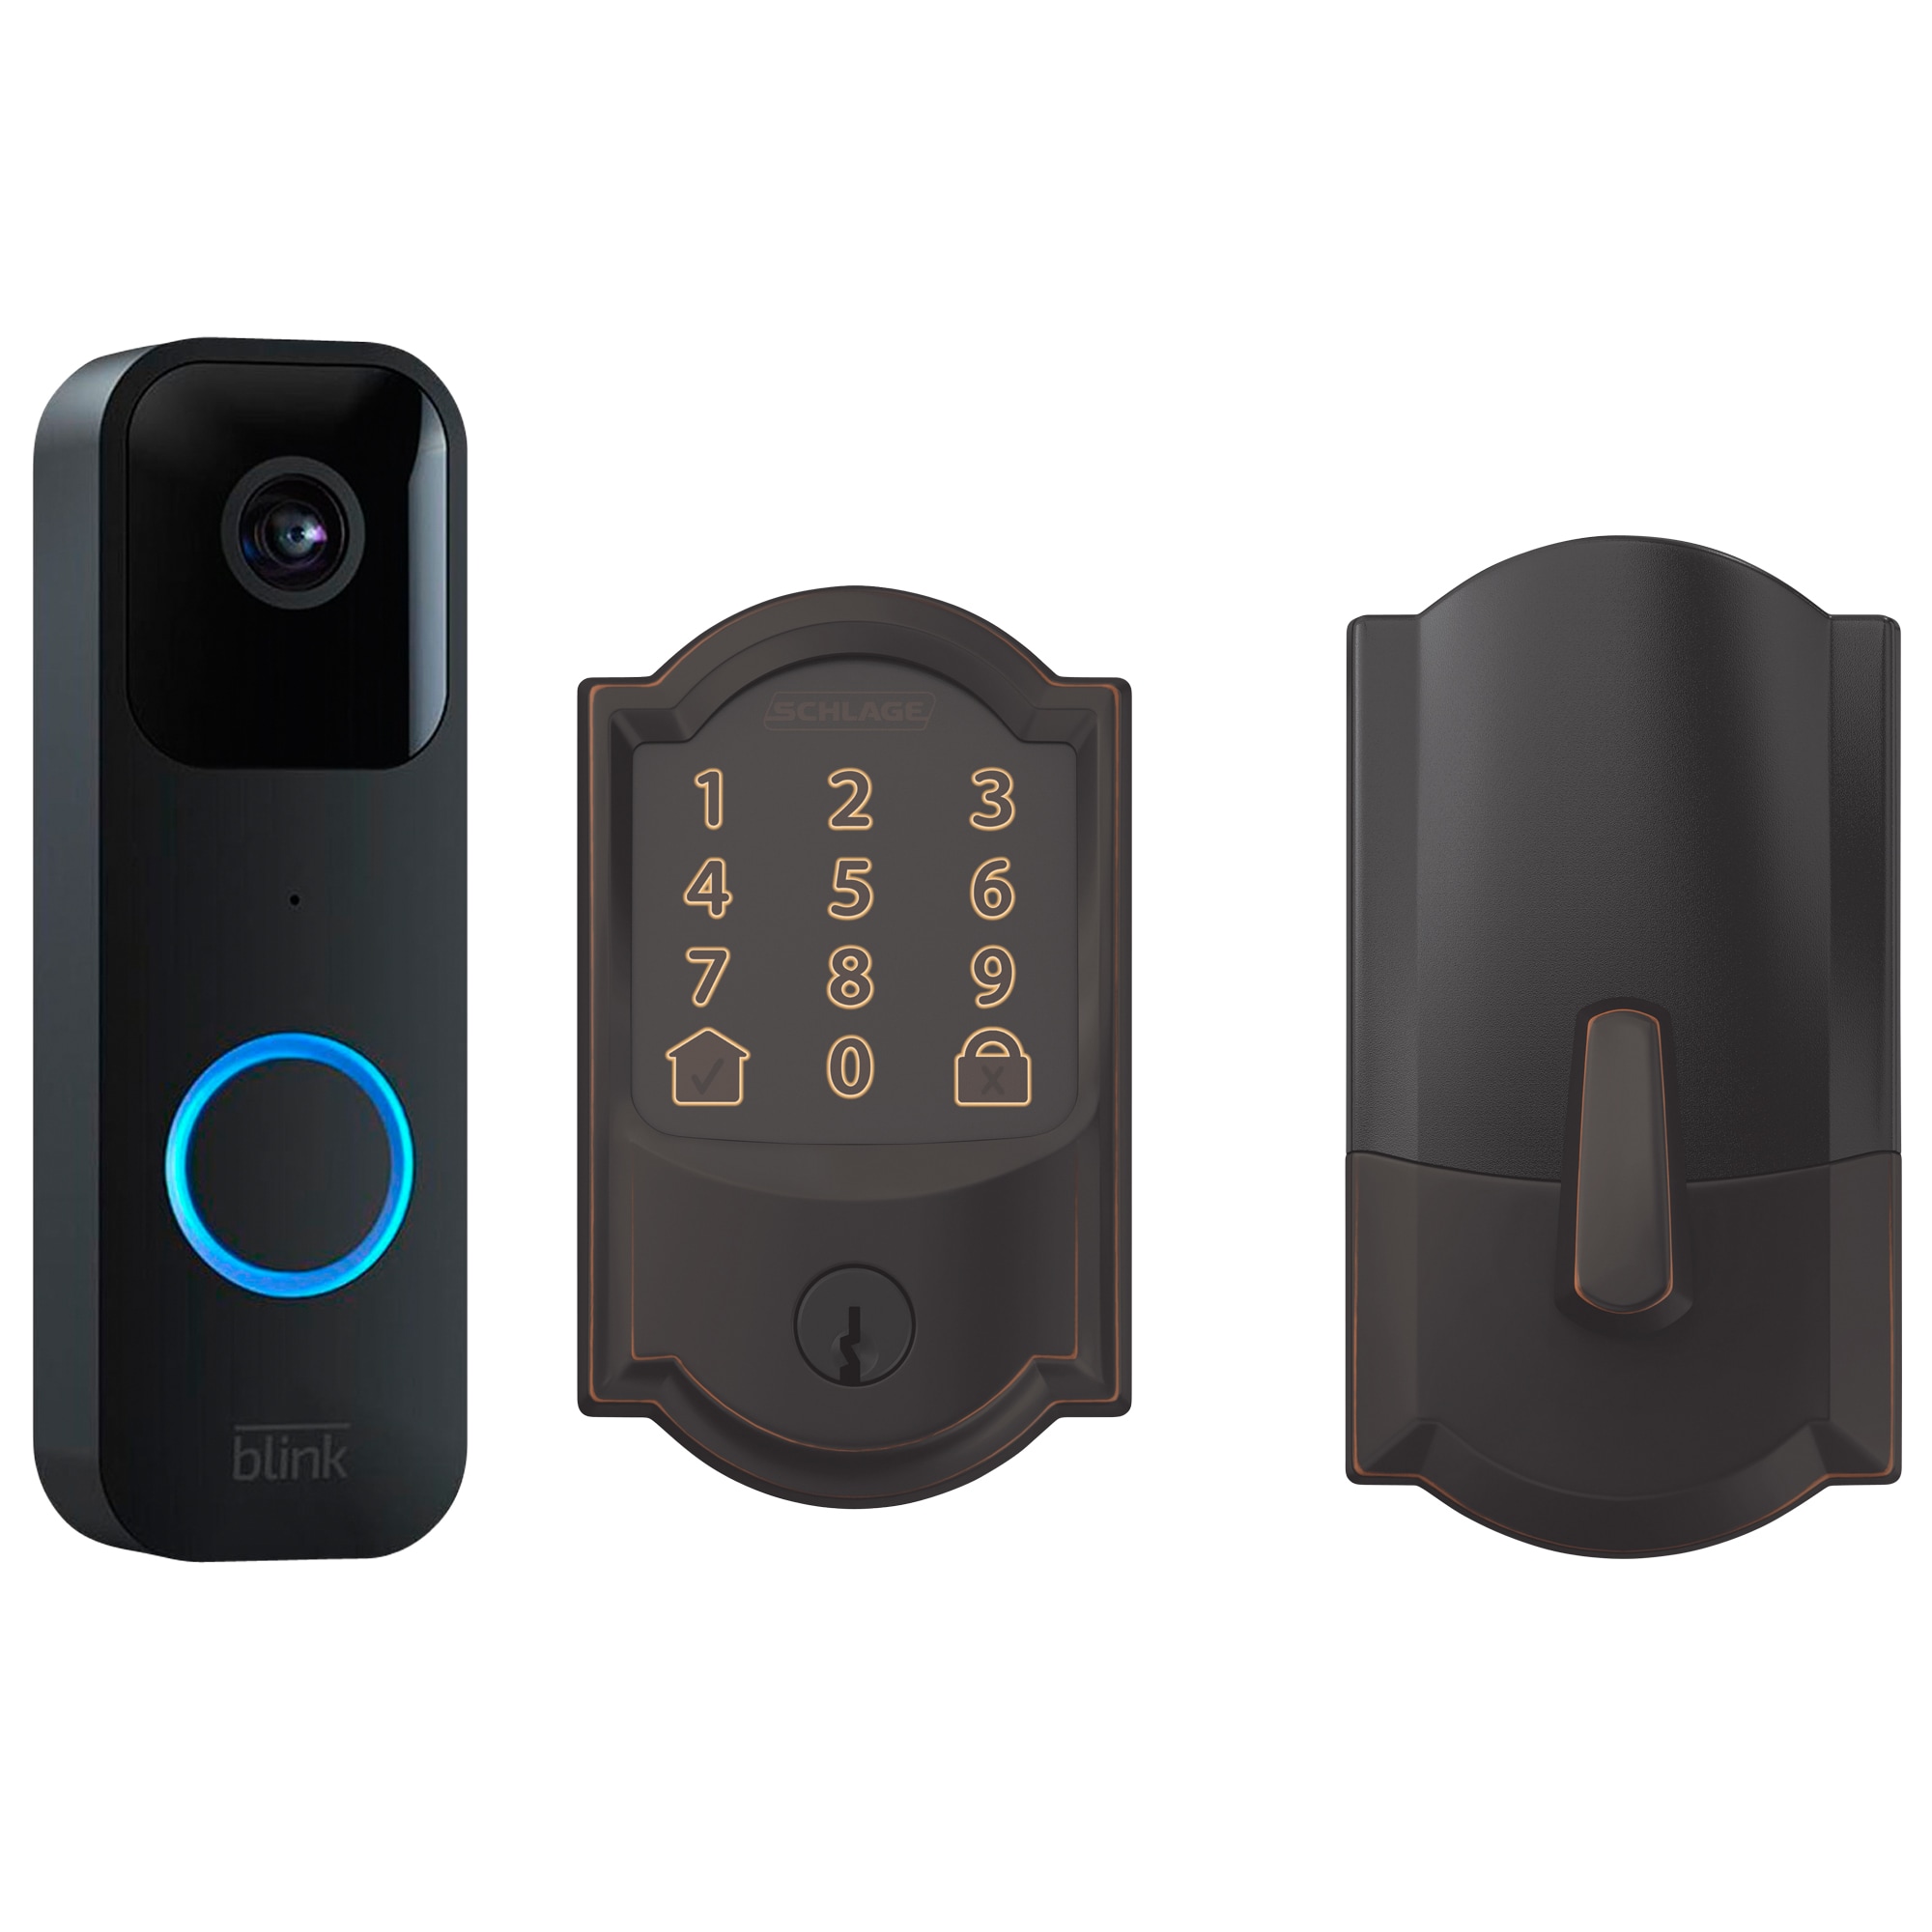 Blink announces a 'cheap' video doorbell - The Verge